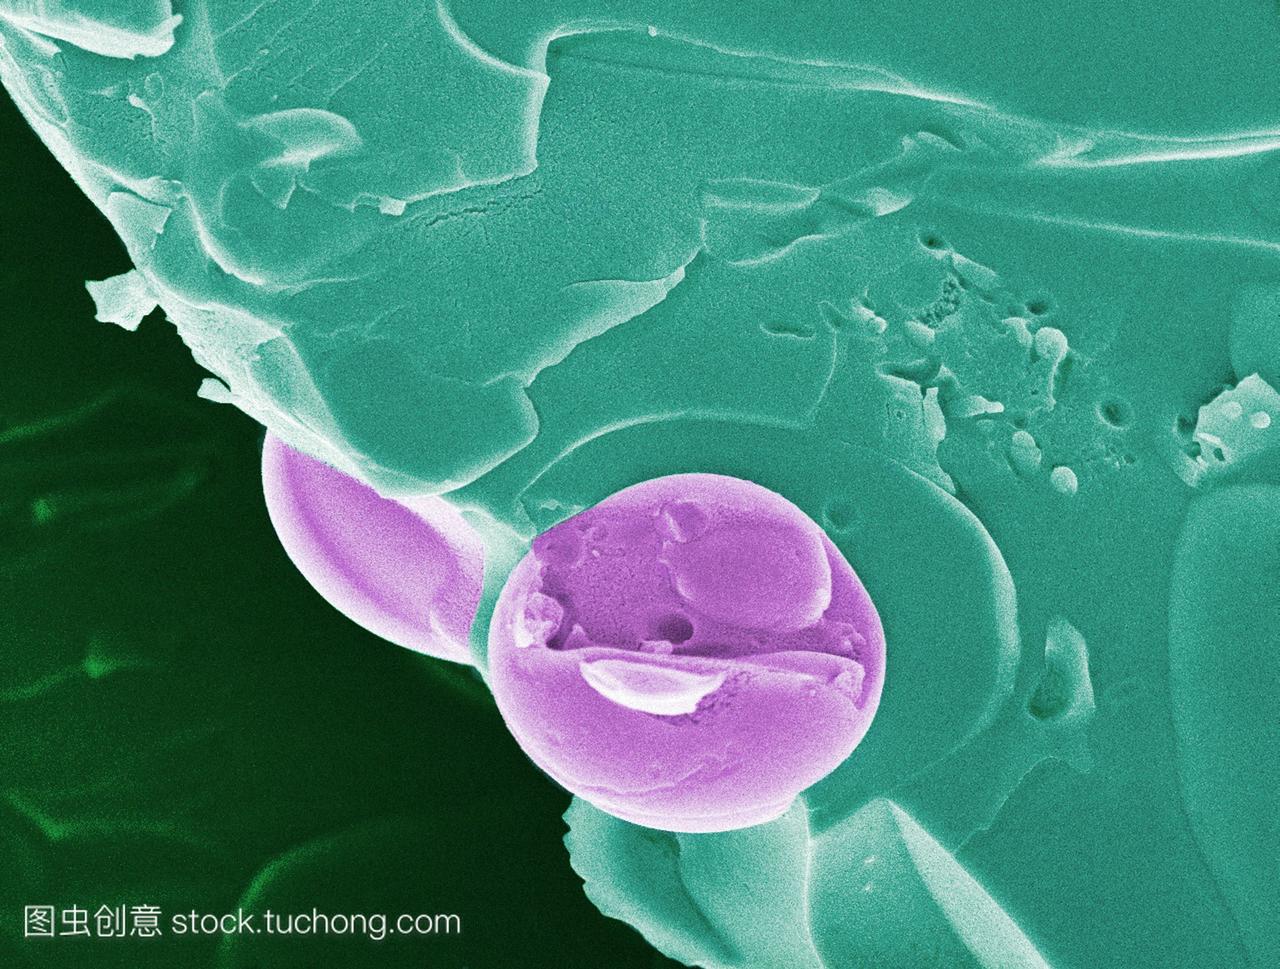 疟疾的血液细胞。彩色扫描电子显微照片sem,